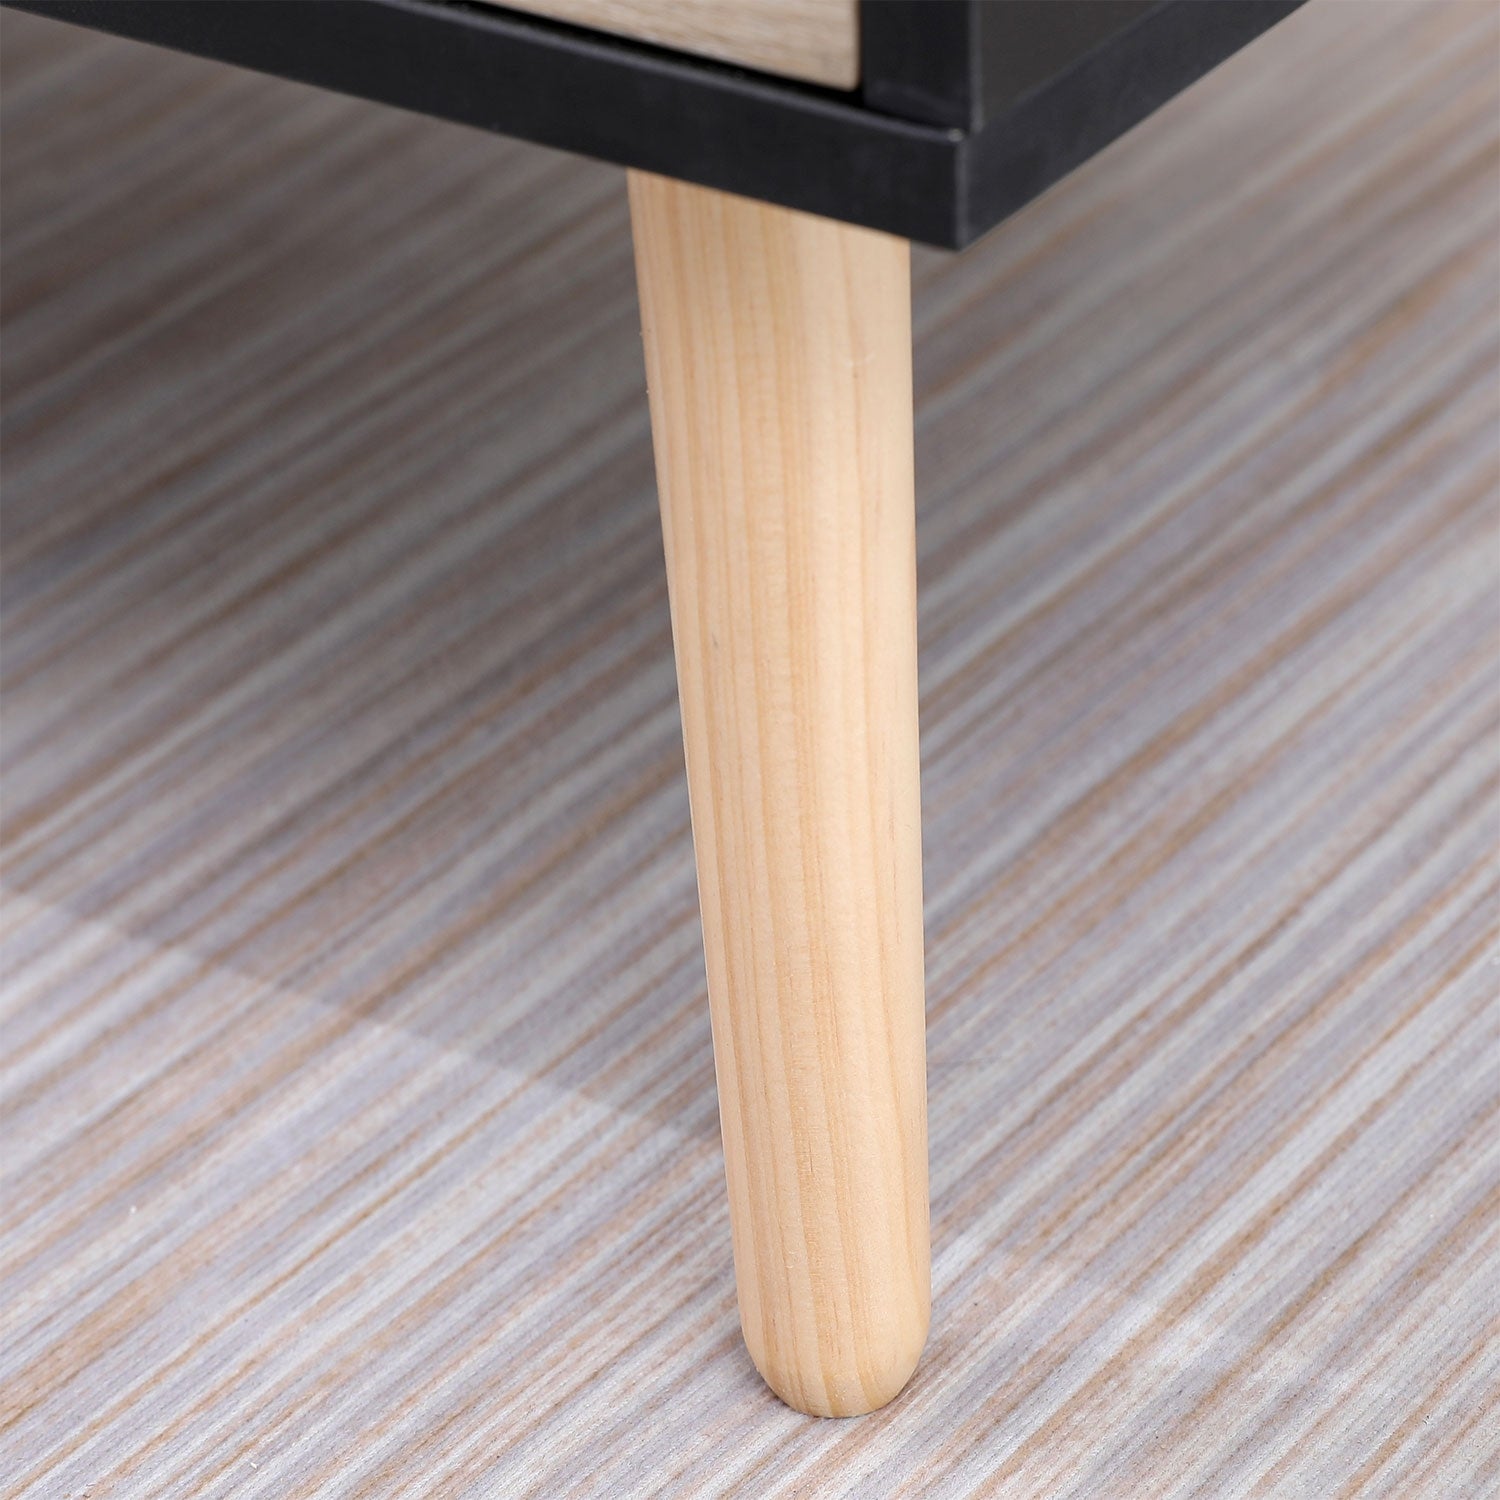 SENJA - Table Basse avec Casier et Tiroir Style Scandinave